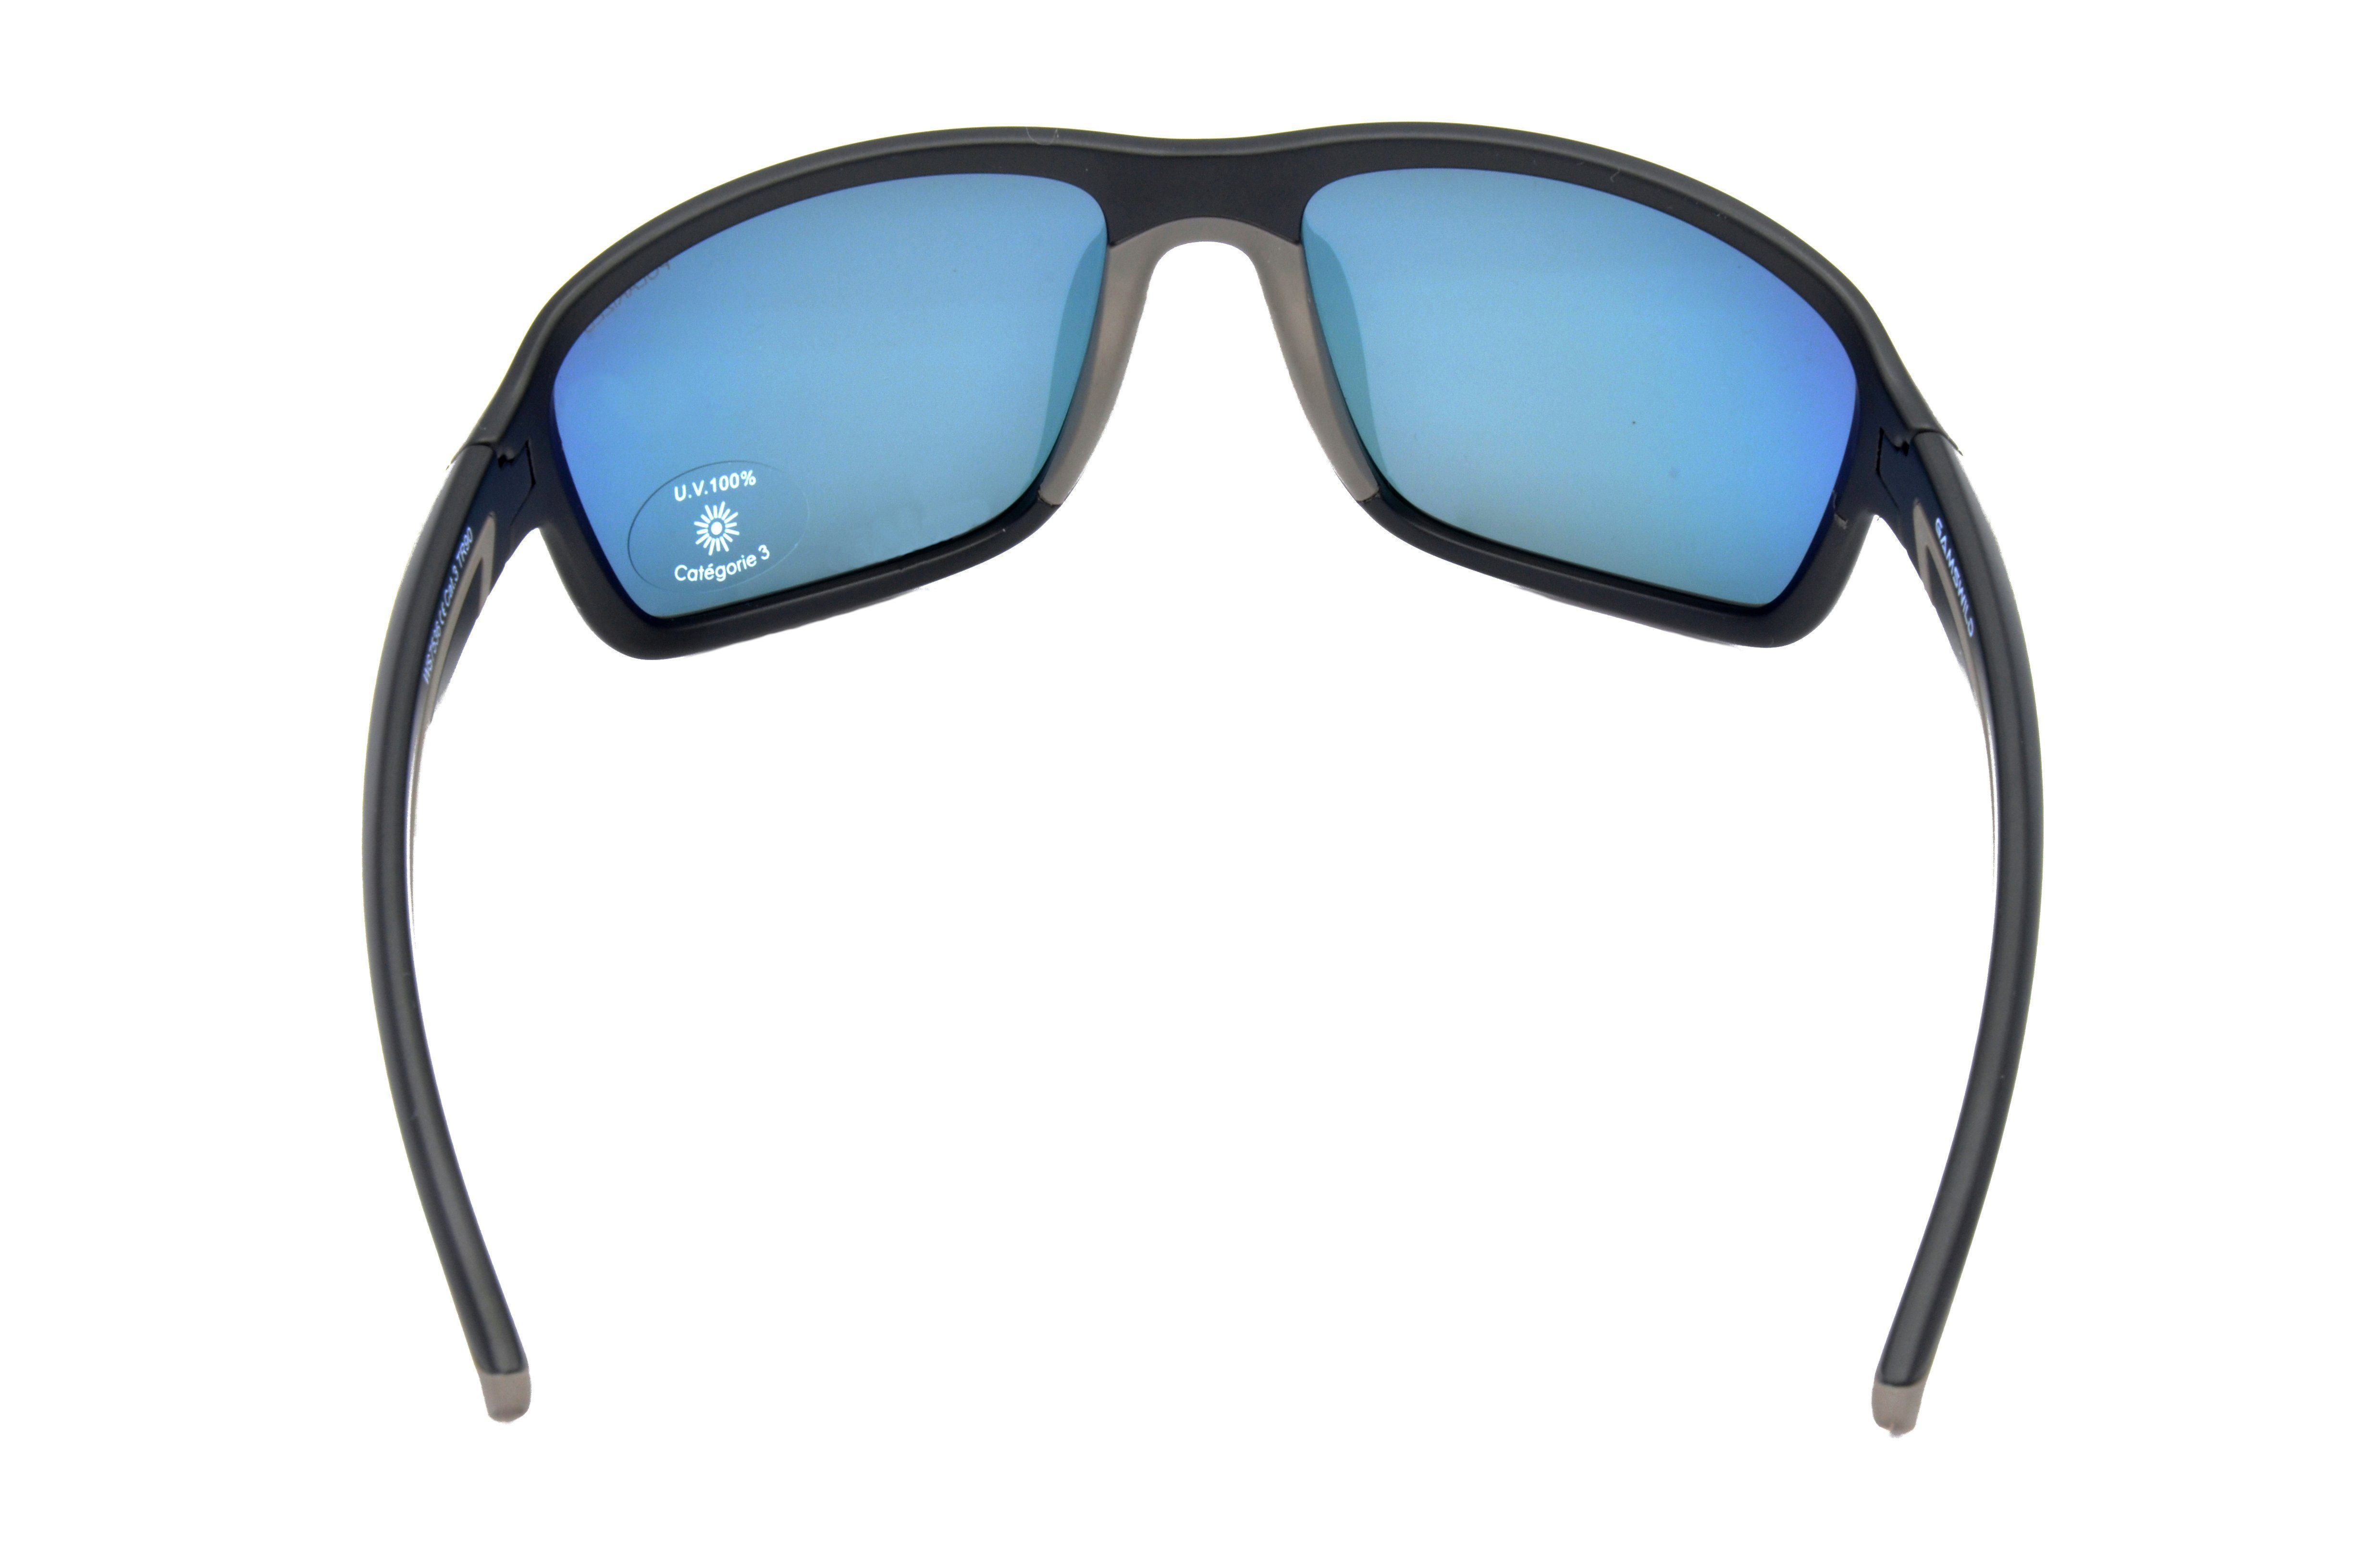 Gamswild Sportbrille WS7536 Sonnenbrille Skibrille Fahrradbrille polarisiert TR90 Herren & Unisex, pink-orange Damen